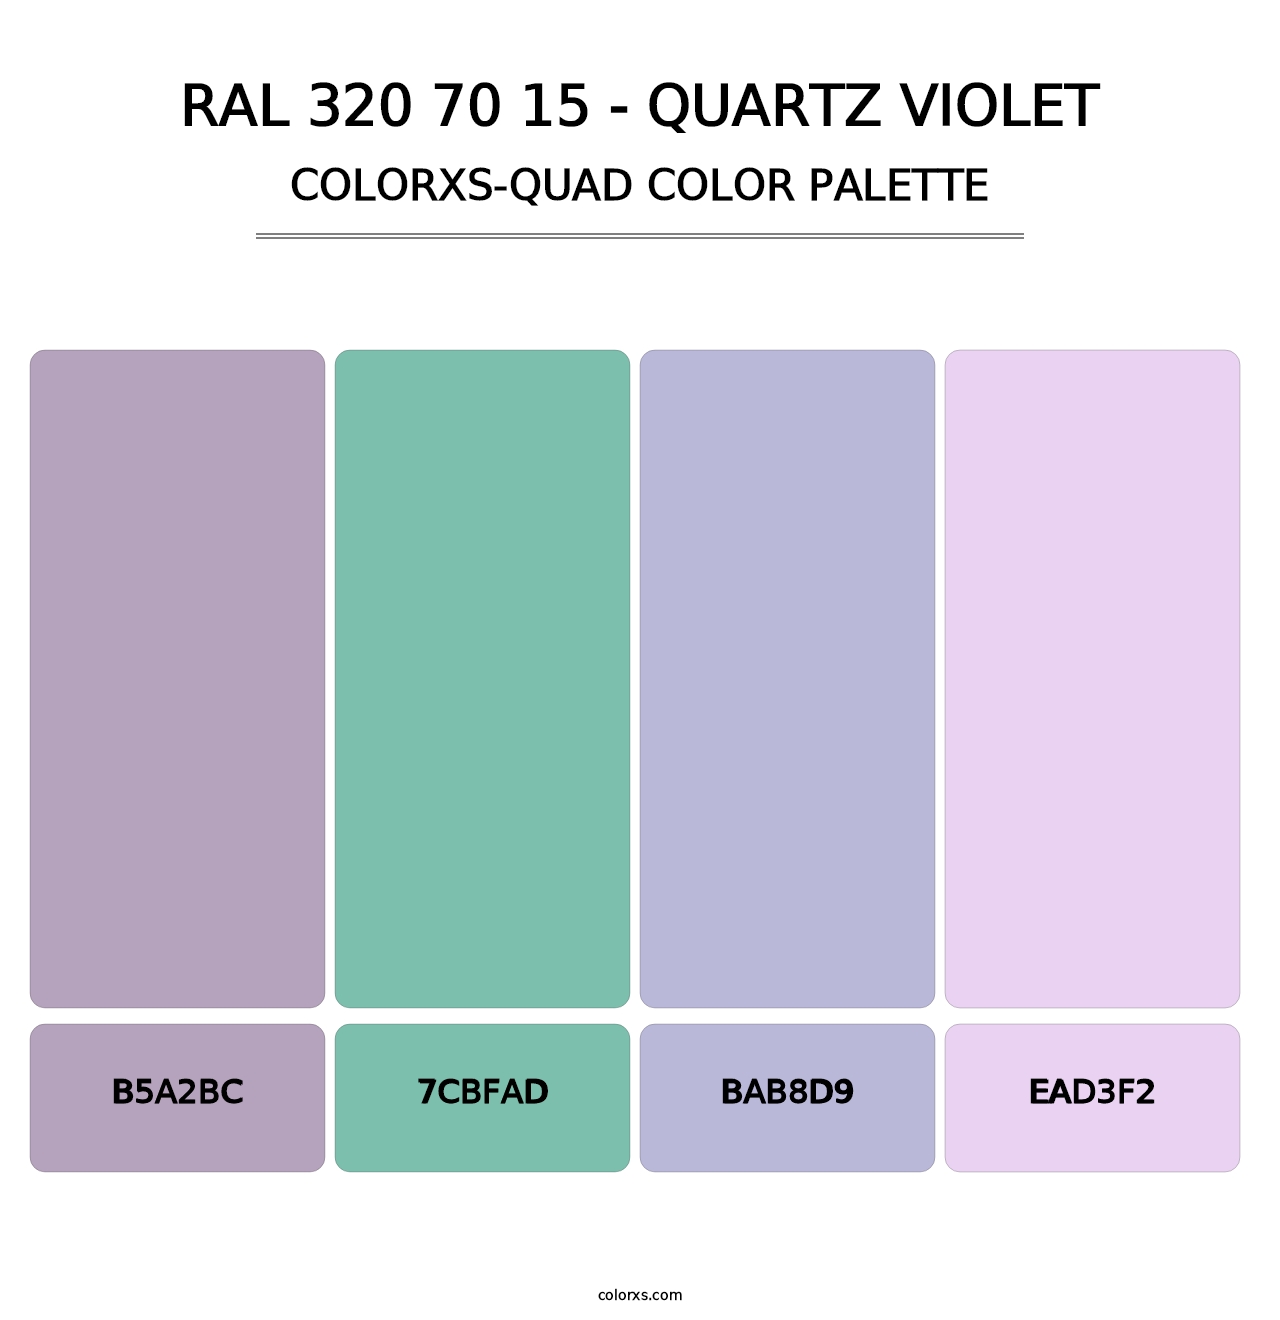 RAL 320 70 15 - Quartz Violet - Colorxs Quad Palette